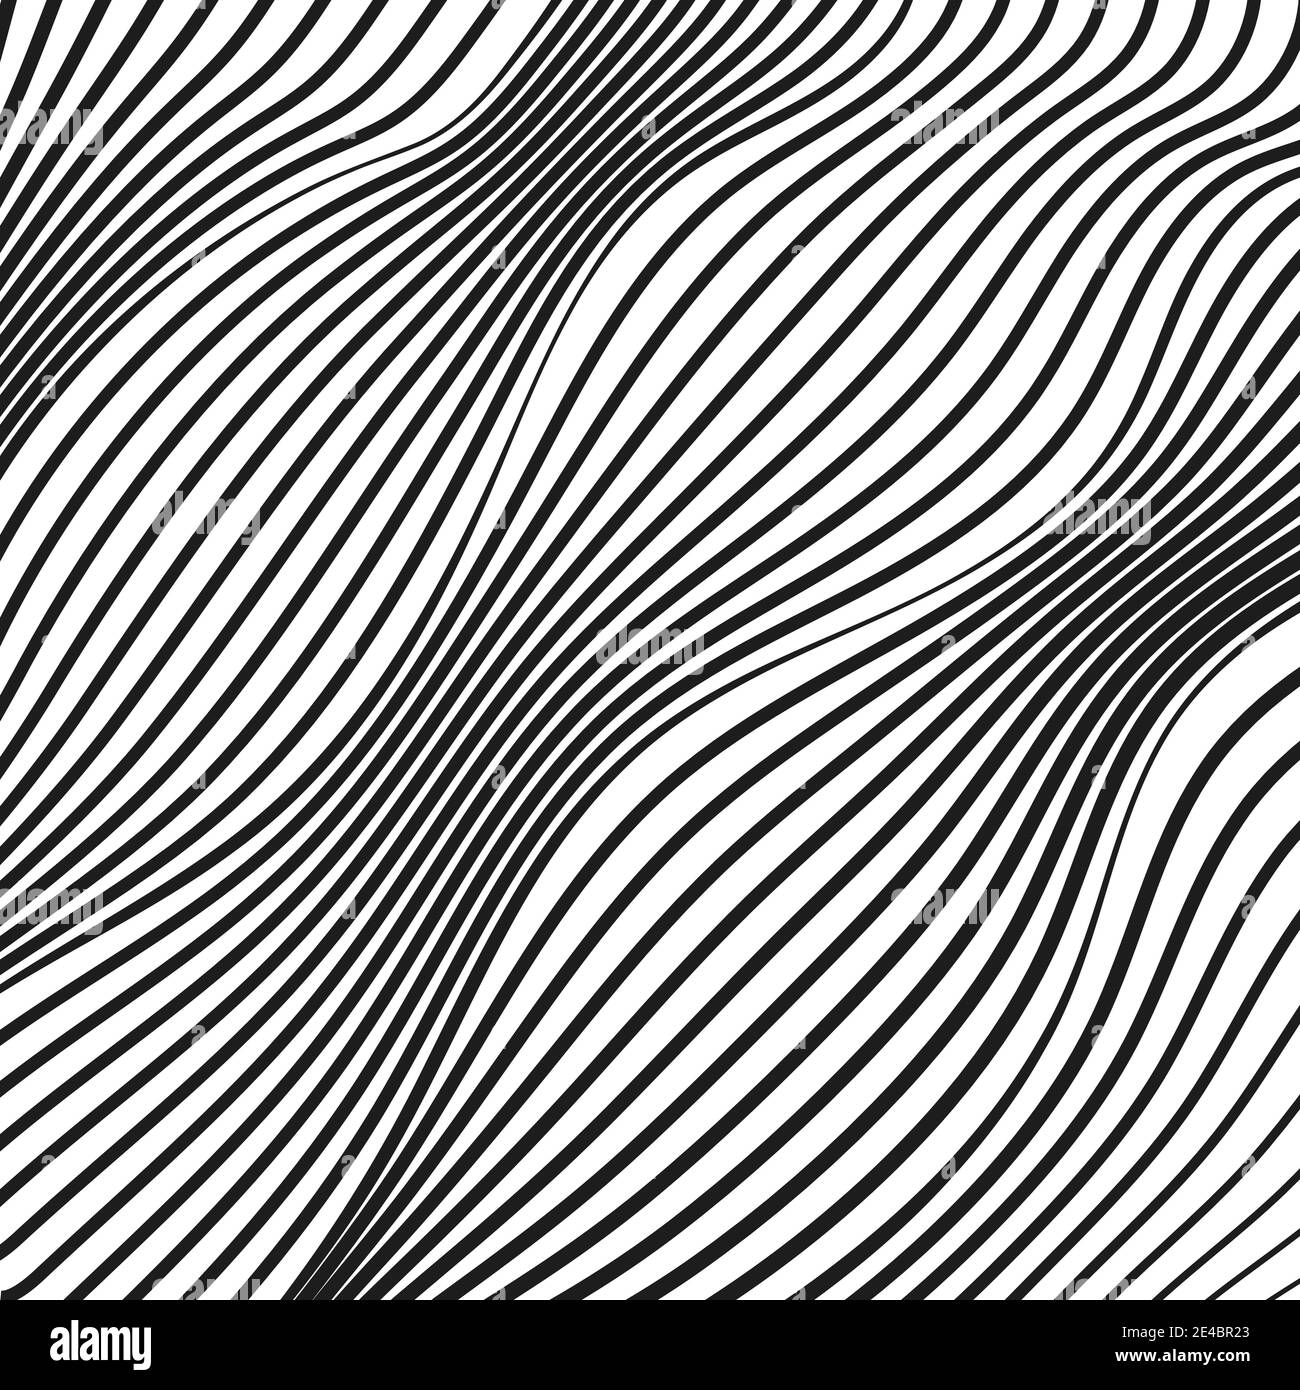 Lignes diagonales abstraites de squiggle. Motif art op. Surface rayée noire et blanche déformée. Courbes torses et onduleuses. Conception technique. Concept moderne. EPS10 Illustration de Vecteur